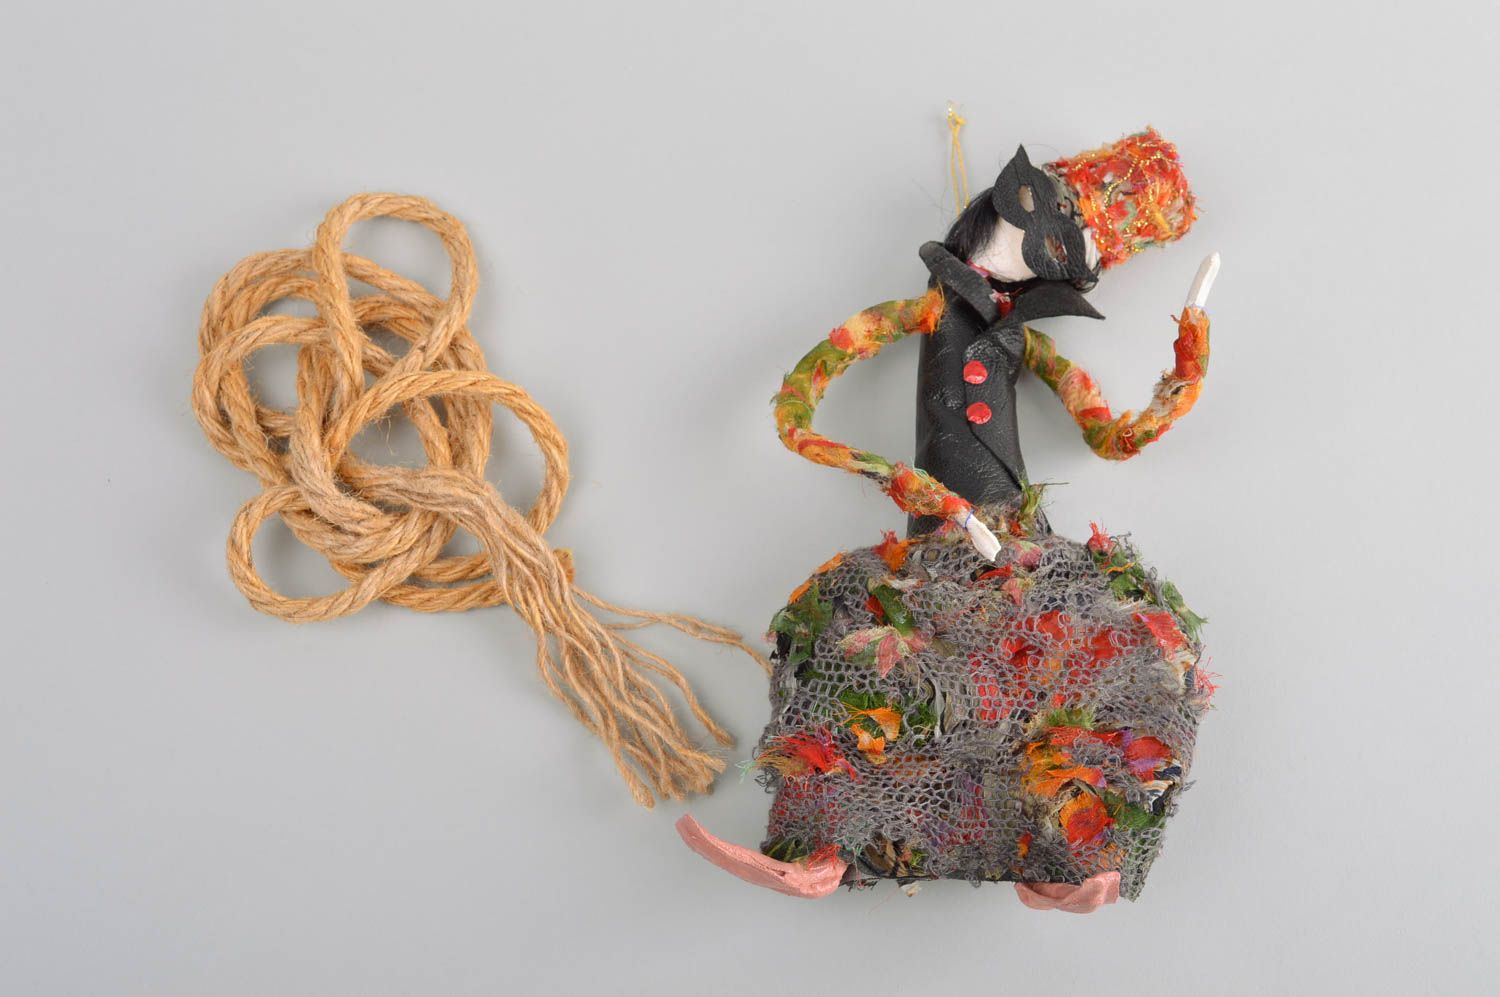 Игрушка ручной работы кукла Маскарад оригинальная игрушка интересный подарок фото 1